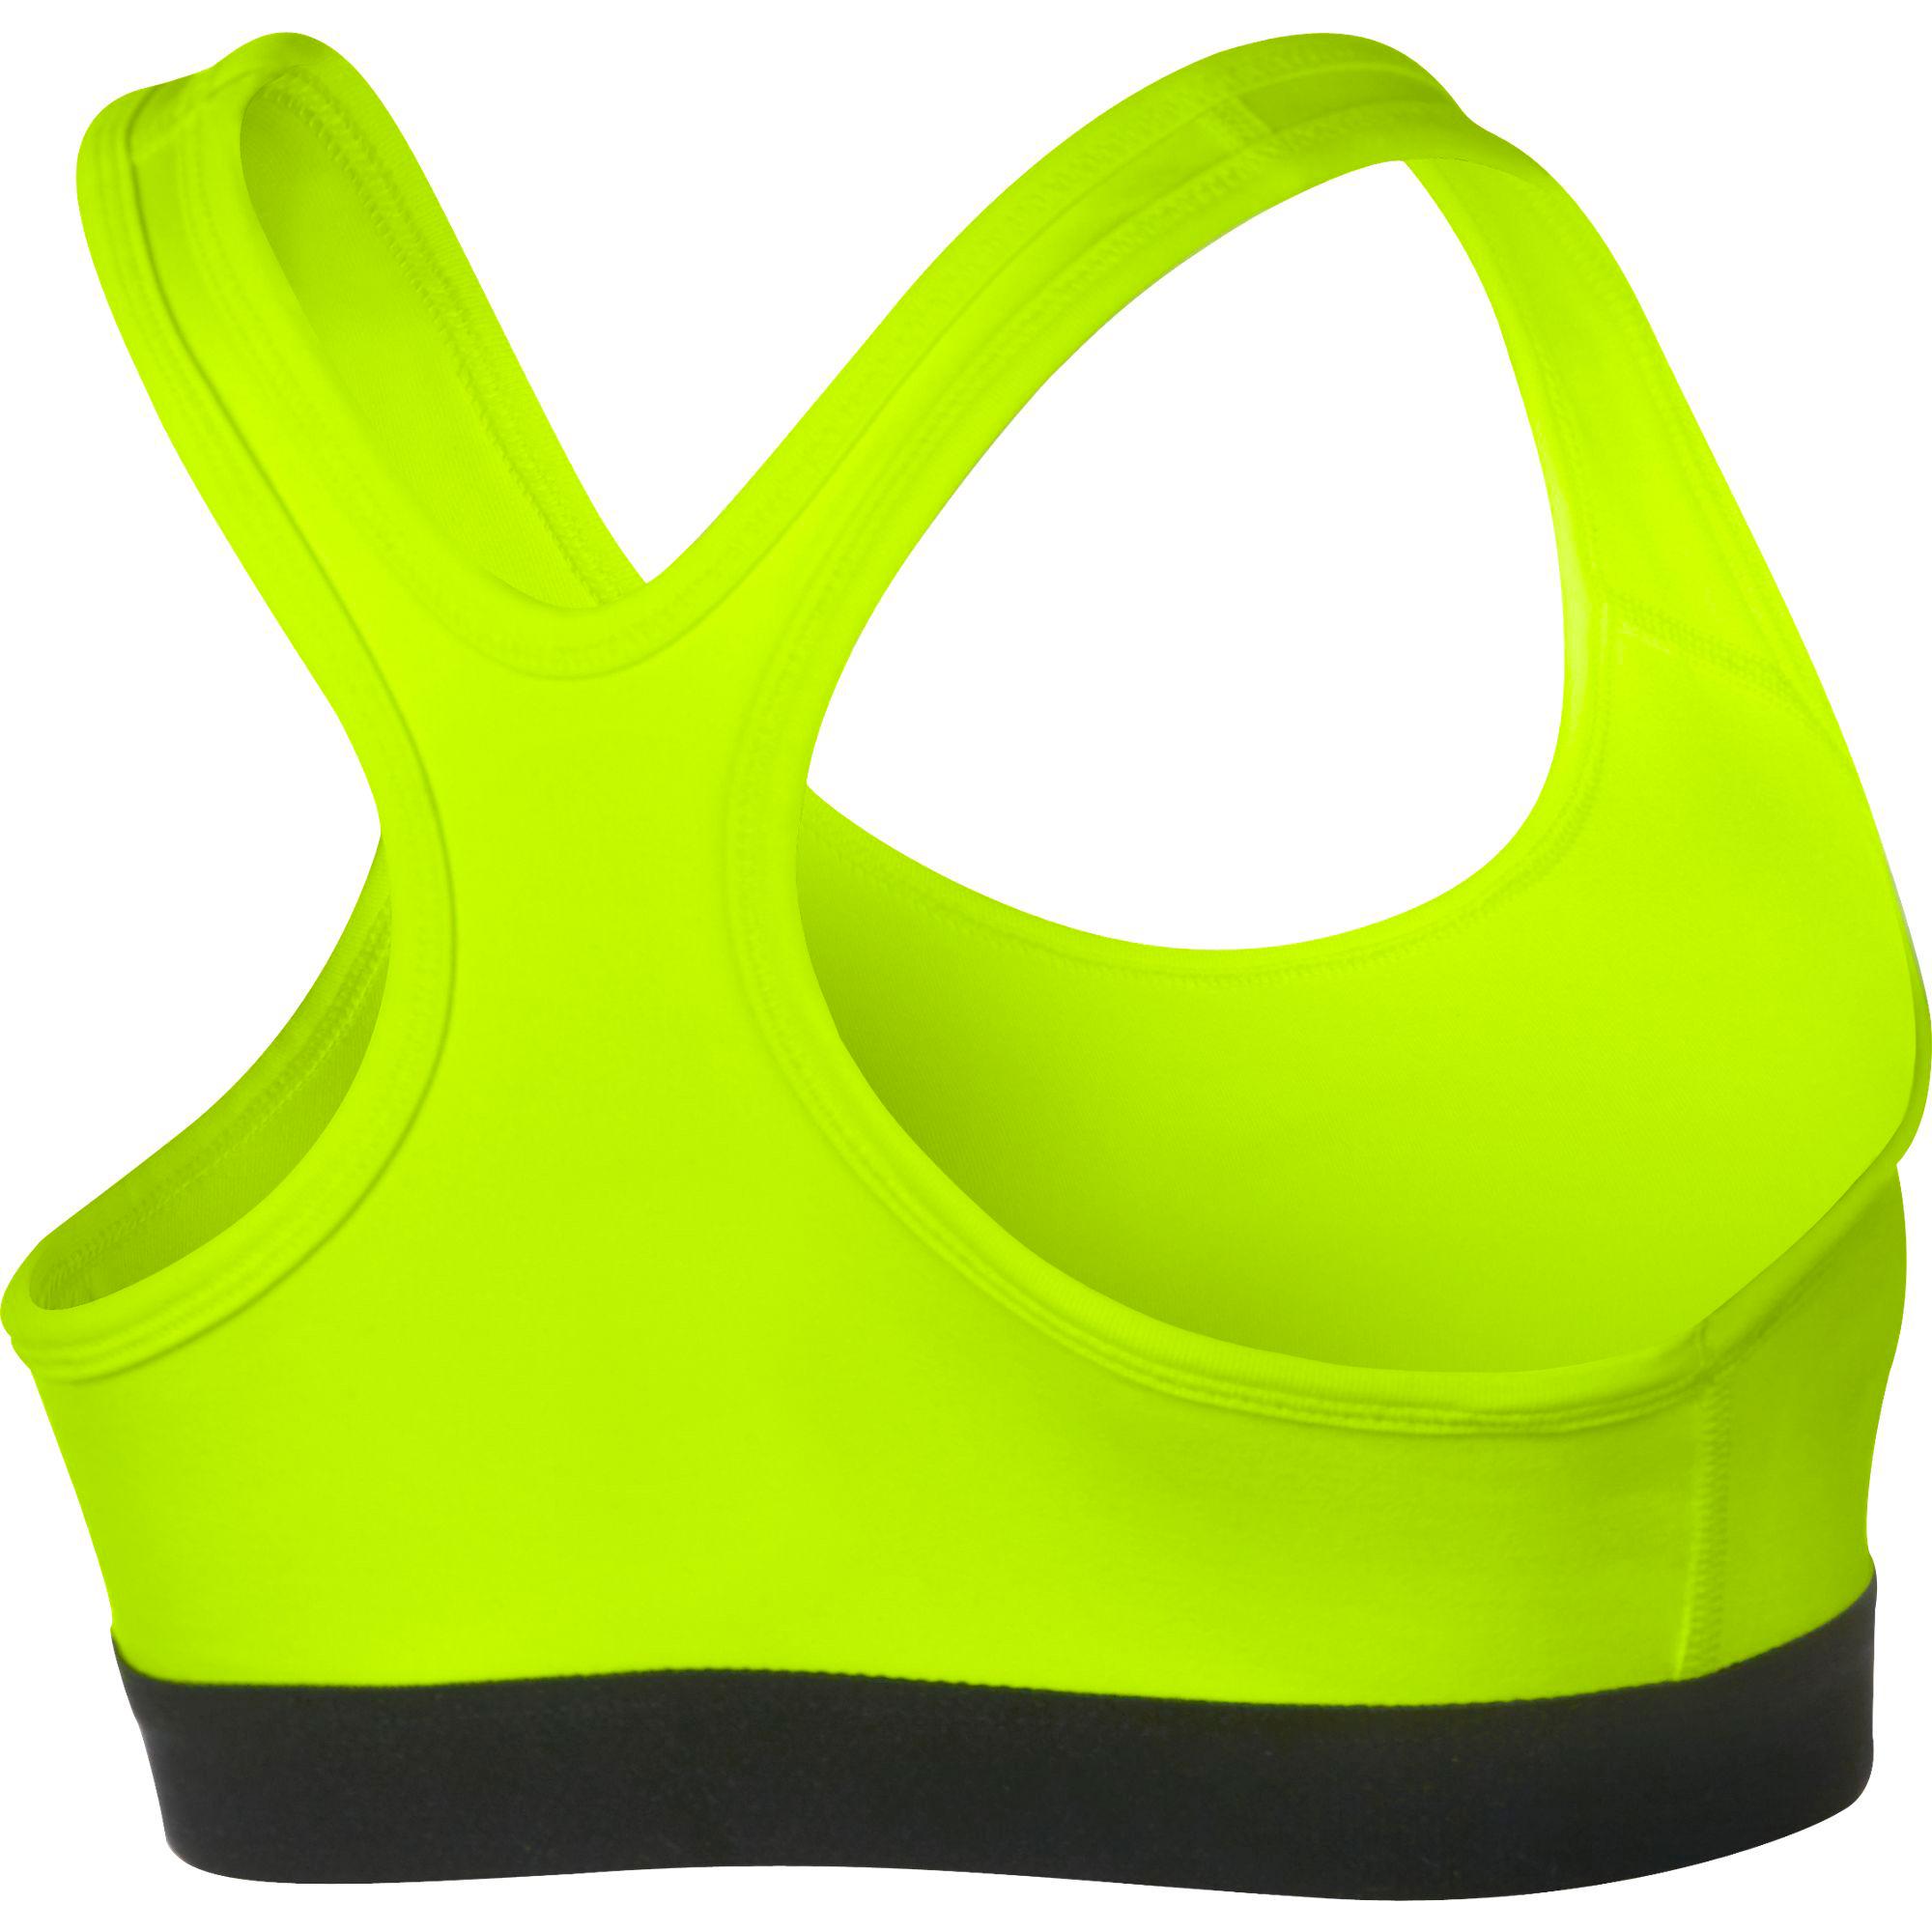 Nike Girls Pro Sports Bra - Volt/Black - Tennisnuts.com